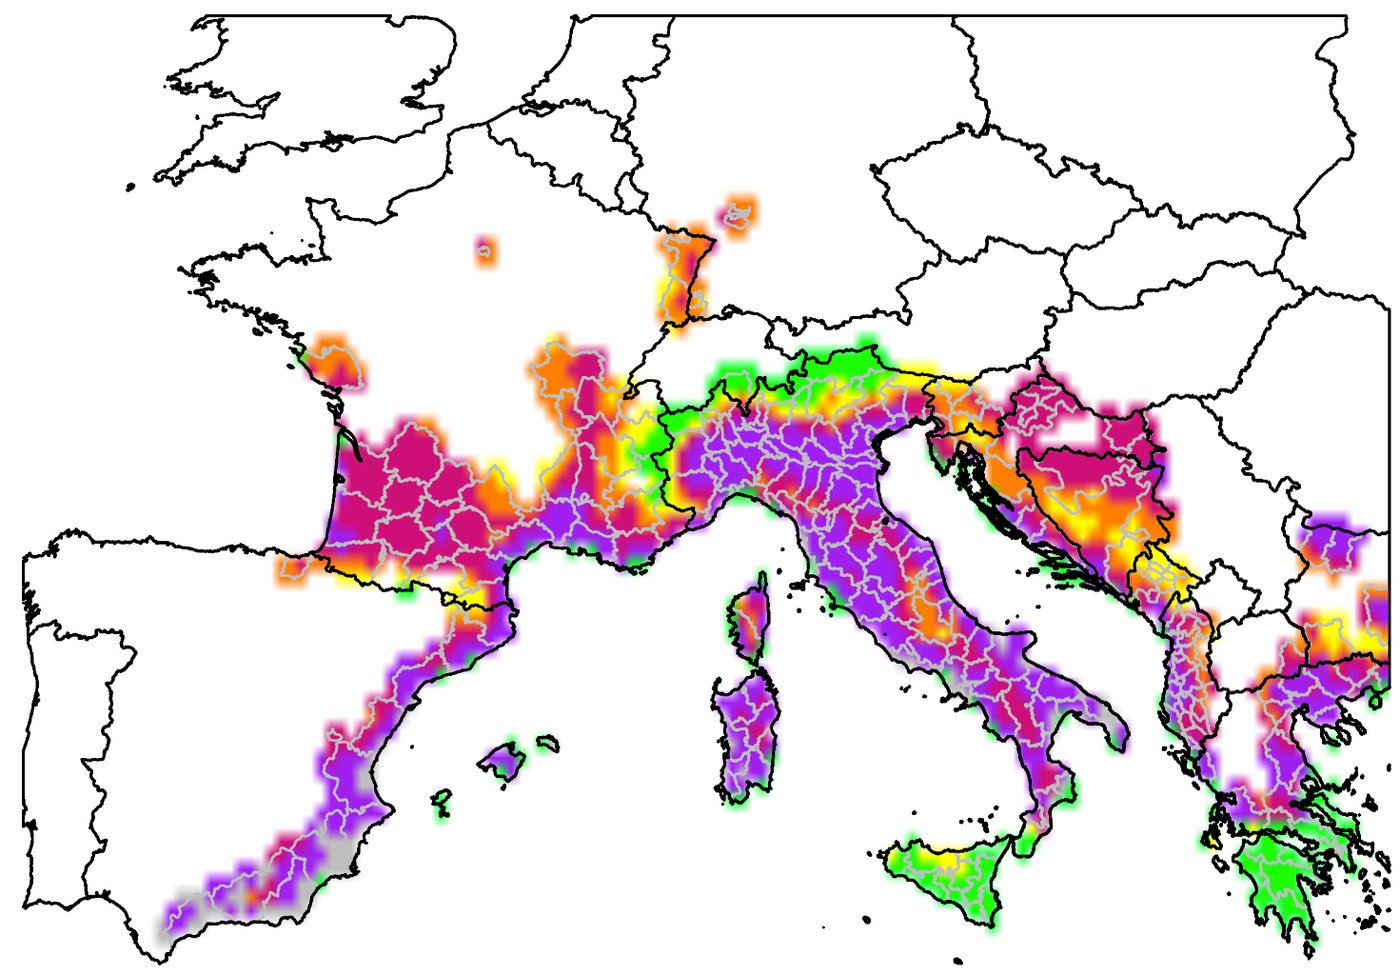 Risikokarte für das Chikungunya-Virus in Europa. Grafik: Renke Lühken, BNITM